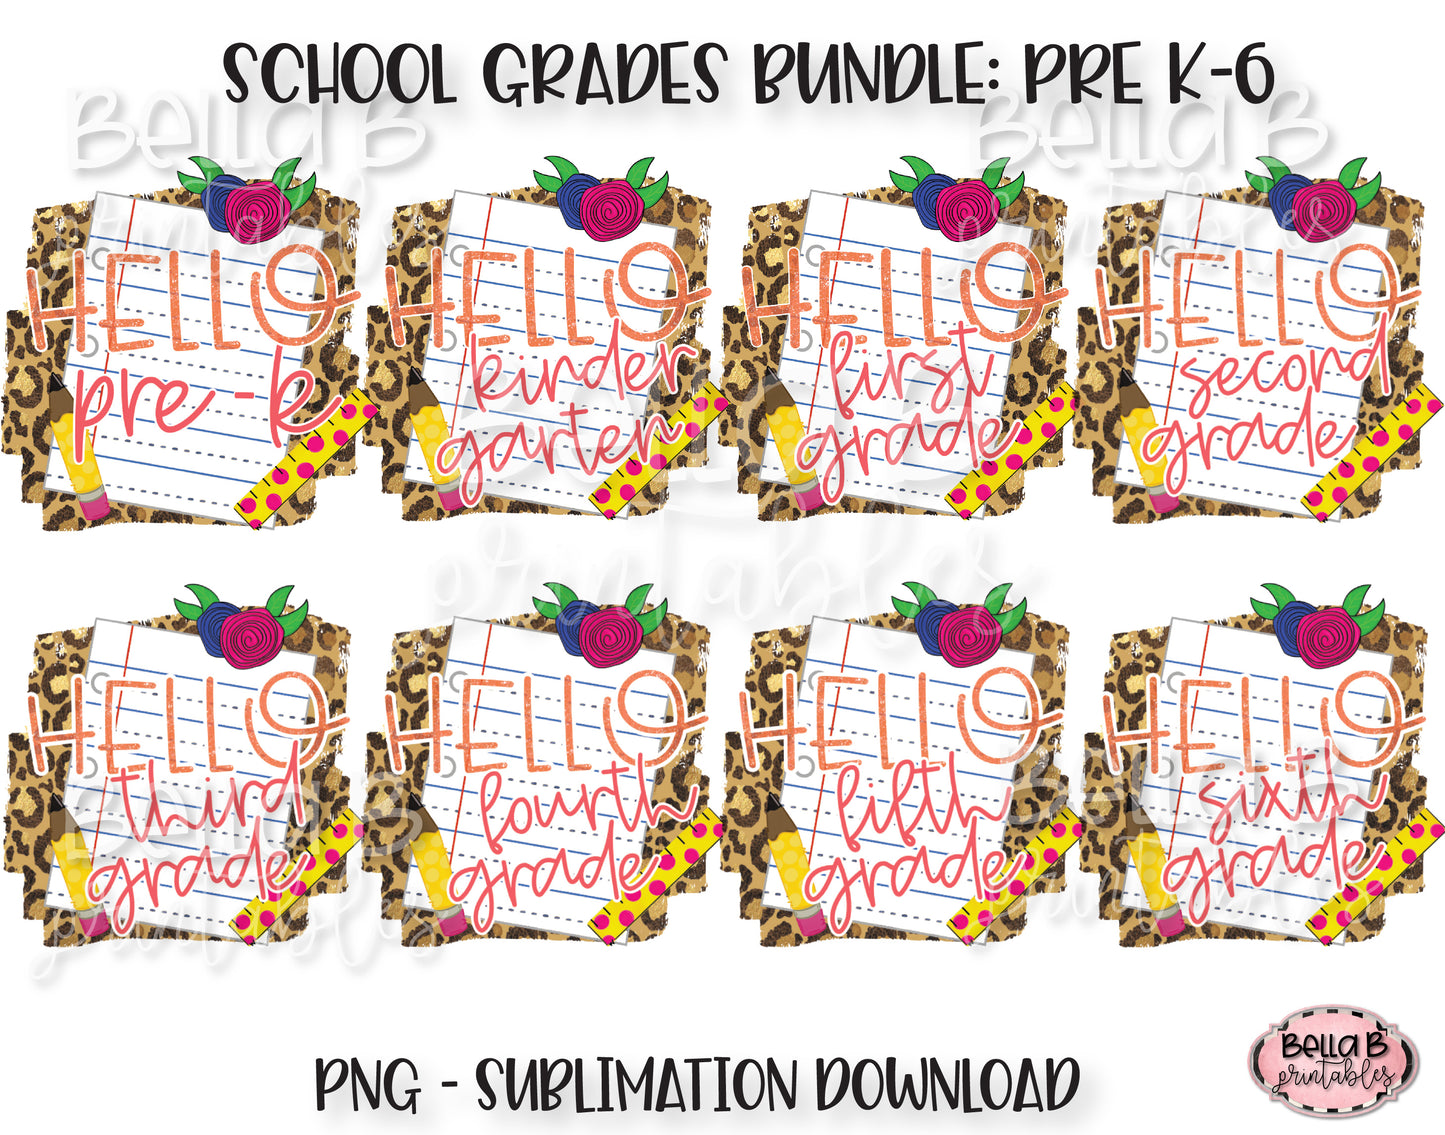 Hello School Grades Sublimation Bundle, School Design